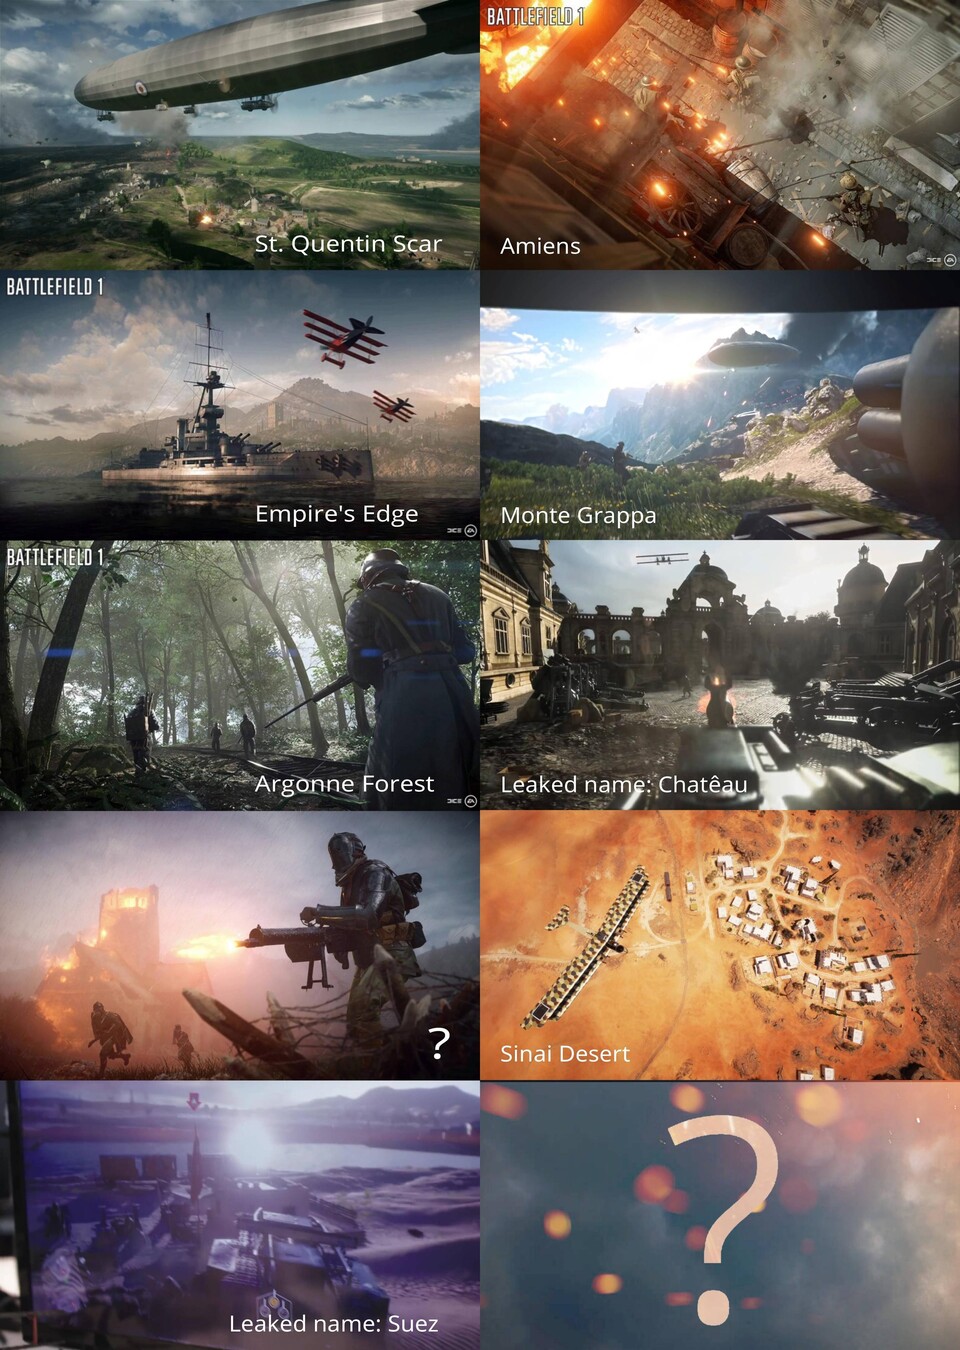 Das sind die Multiplayer-Maps von Battlefield 1